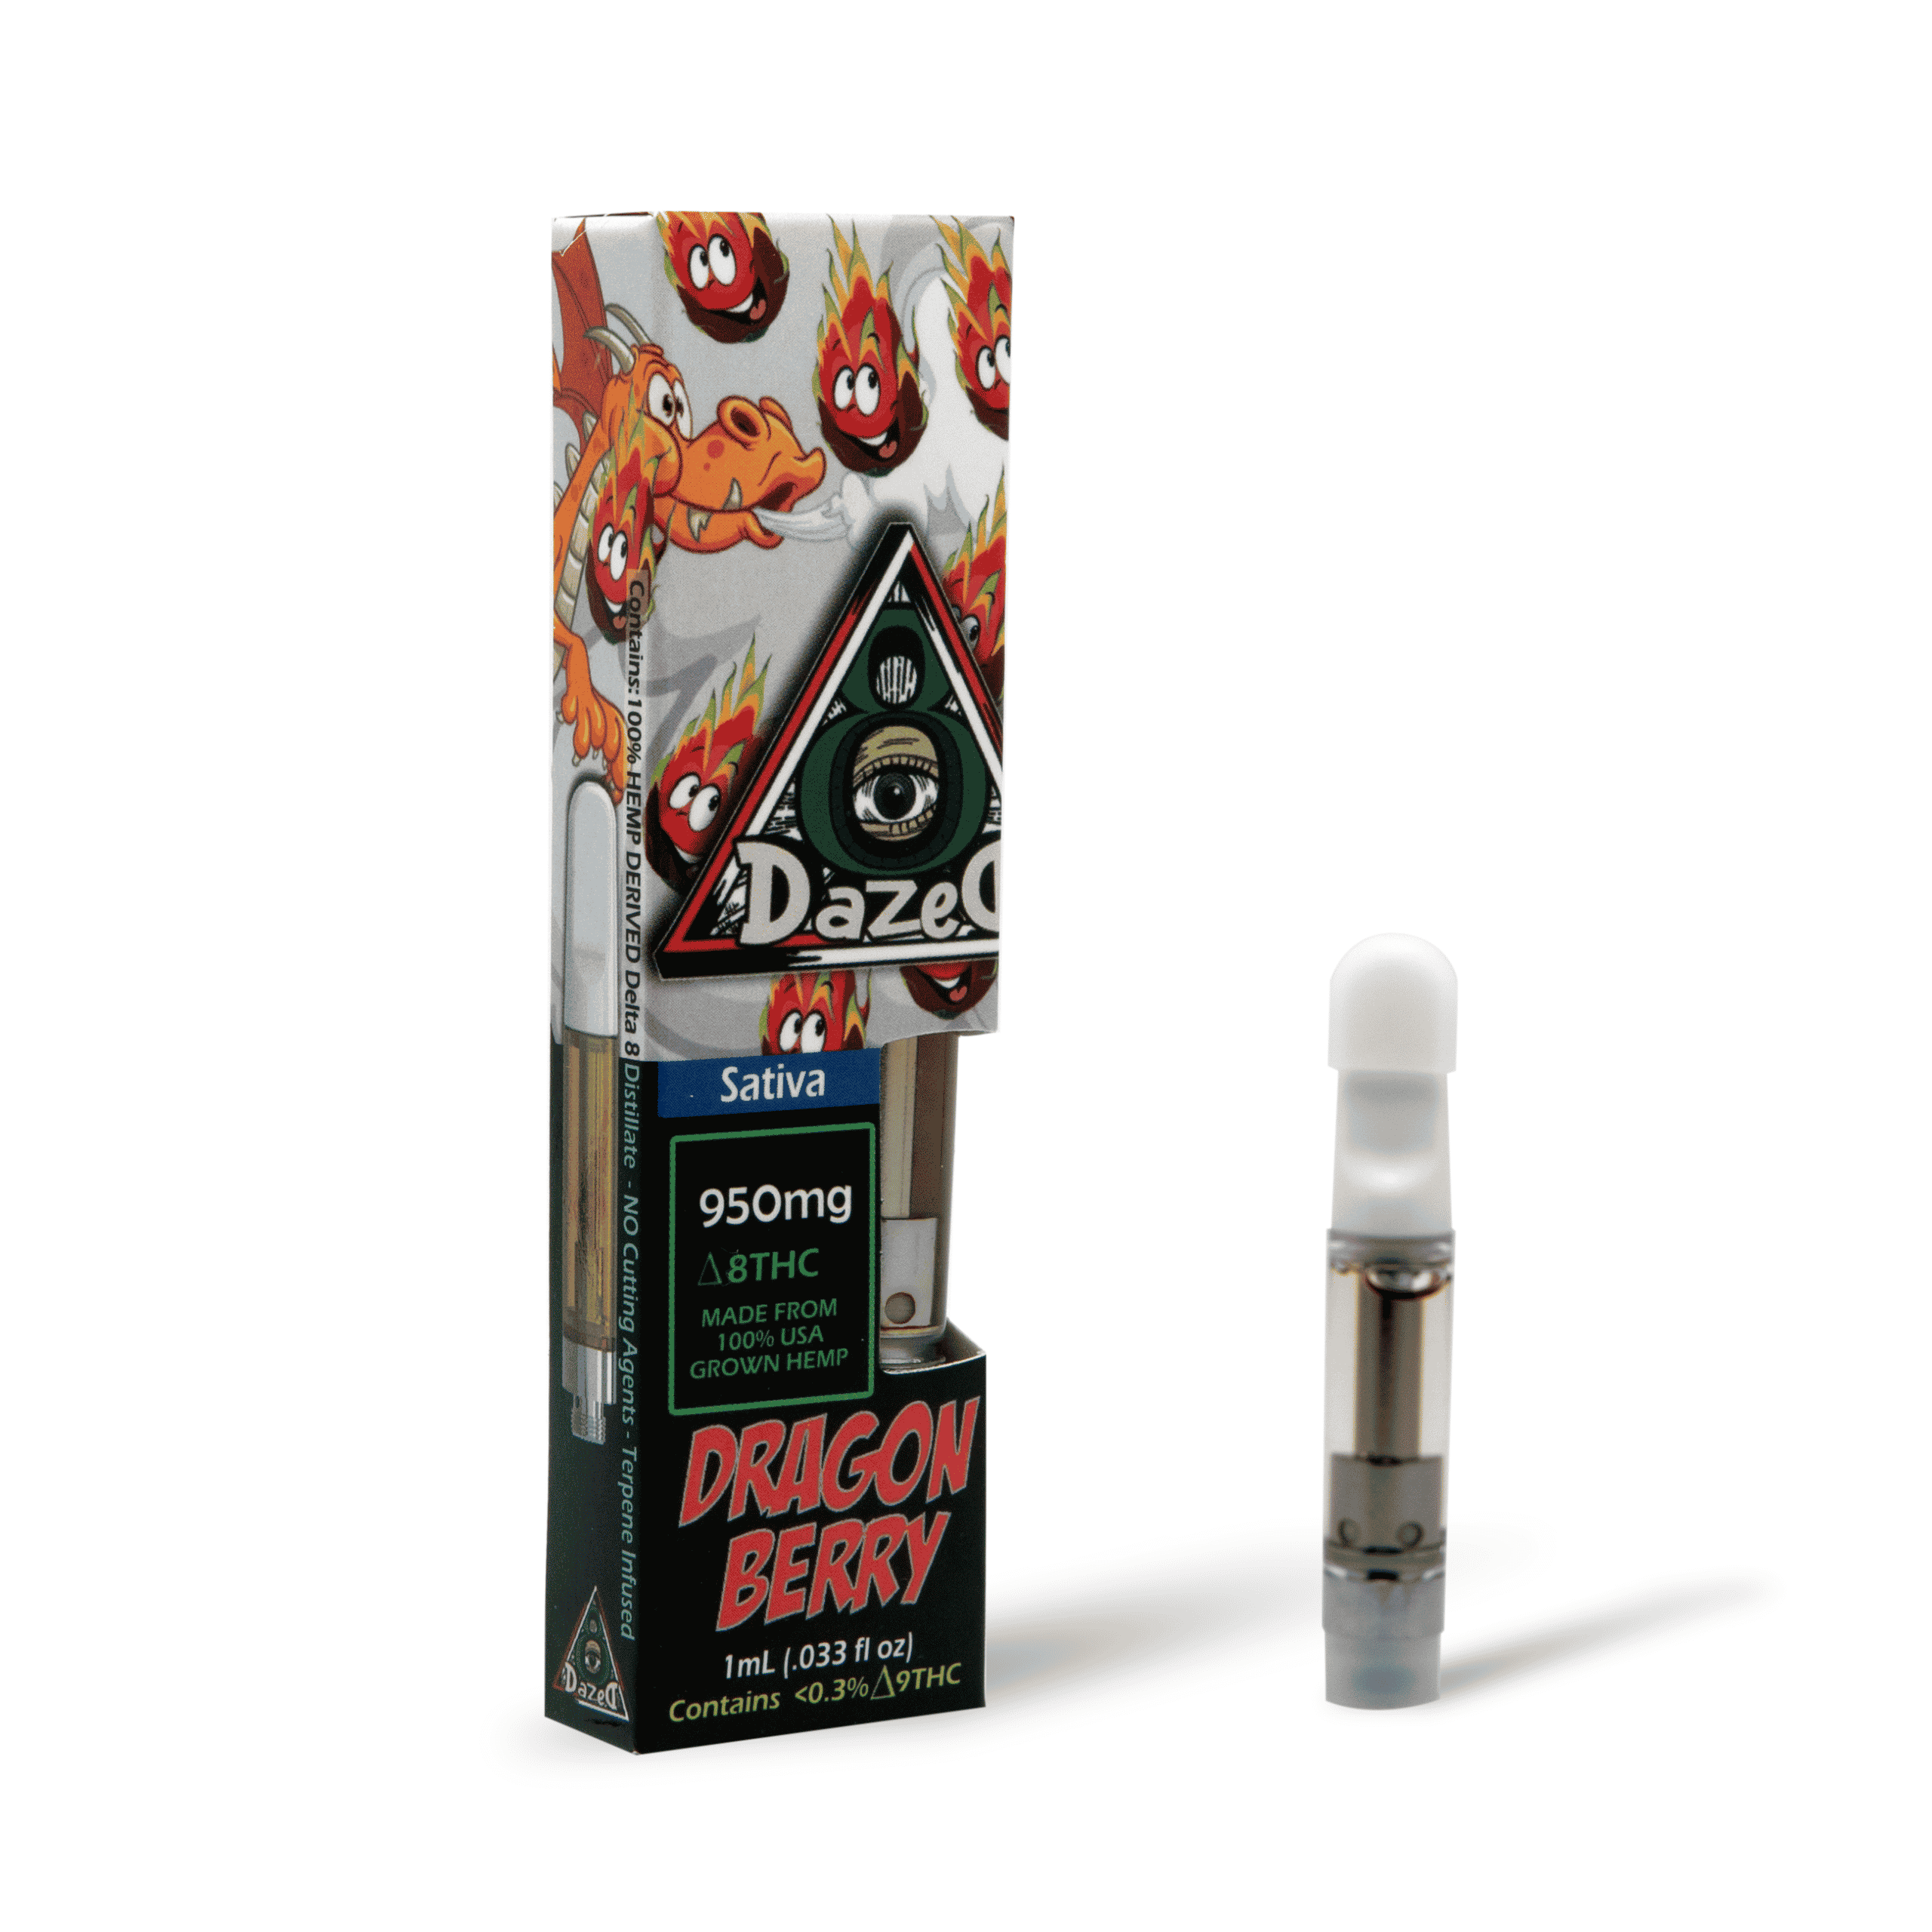 DazeD8 Dragon Berry Delta 8 Cartridge (1g) Best Price